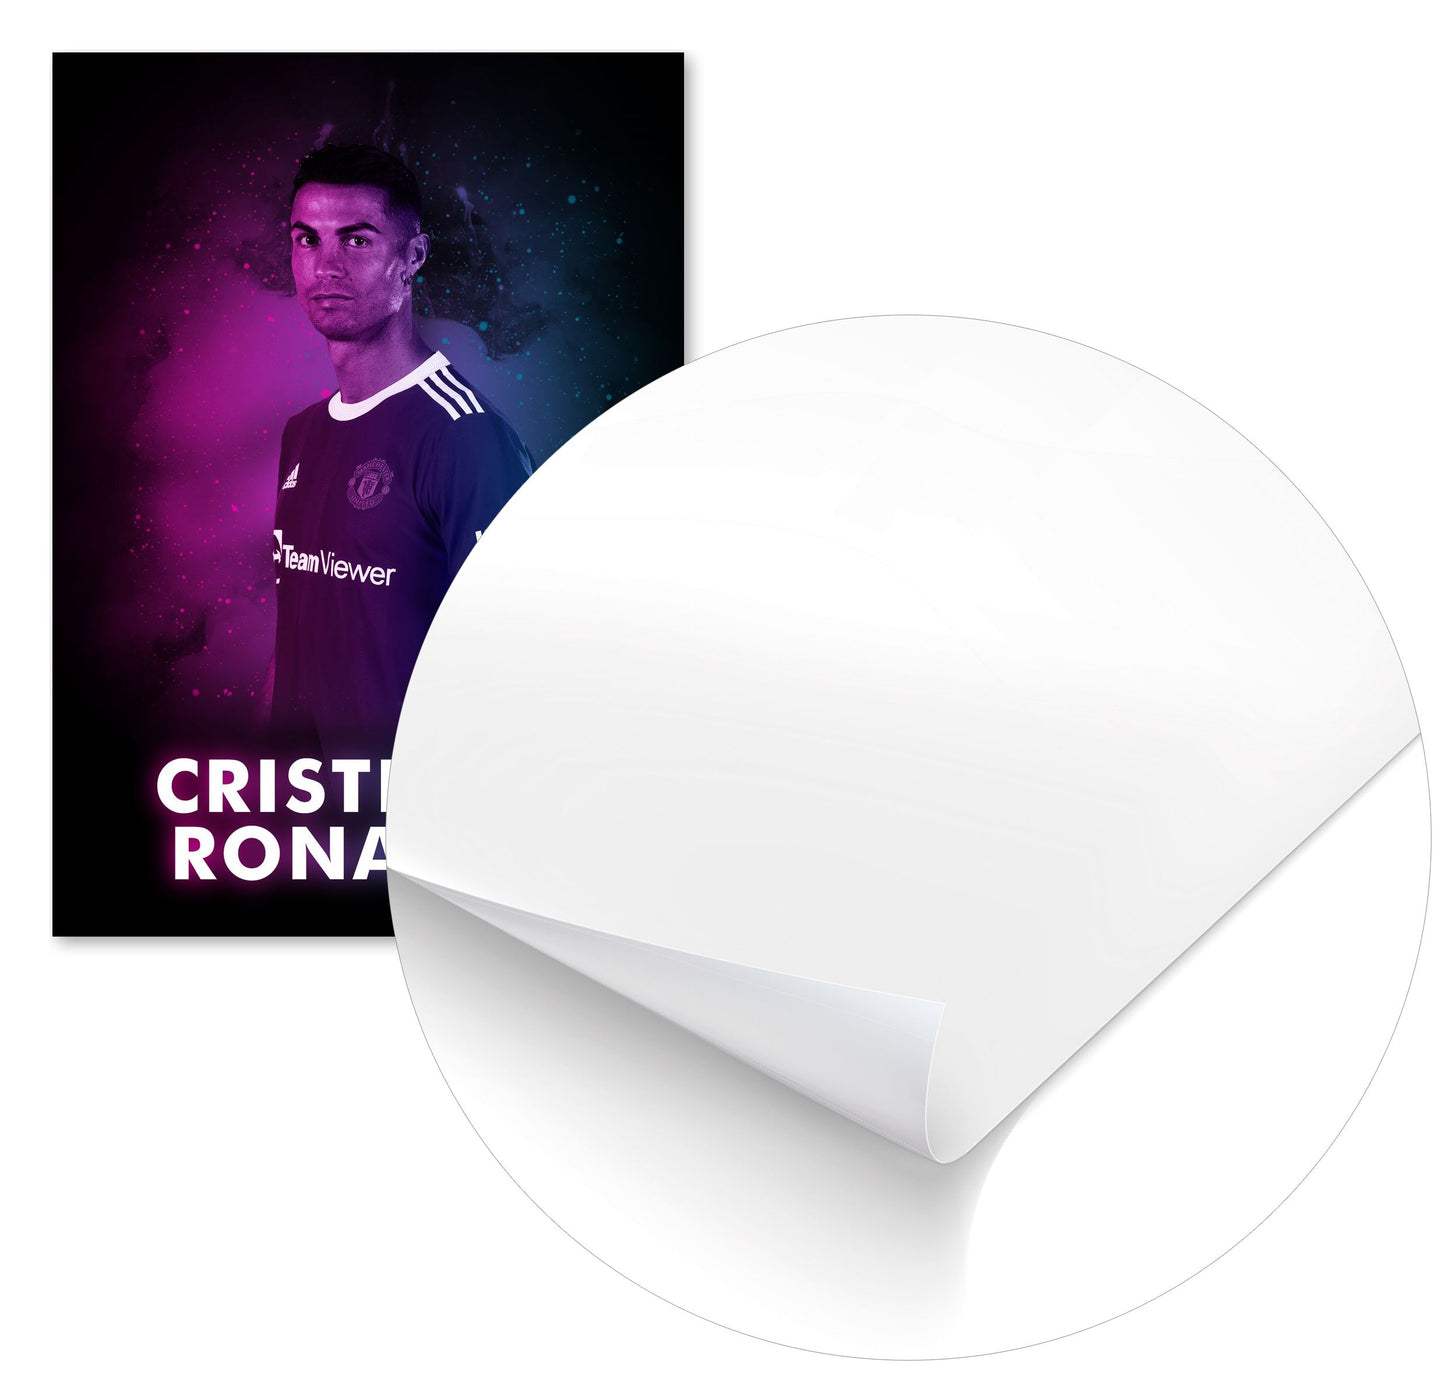 Ronaldo - @DexpertChaca